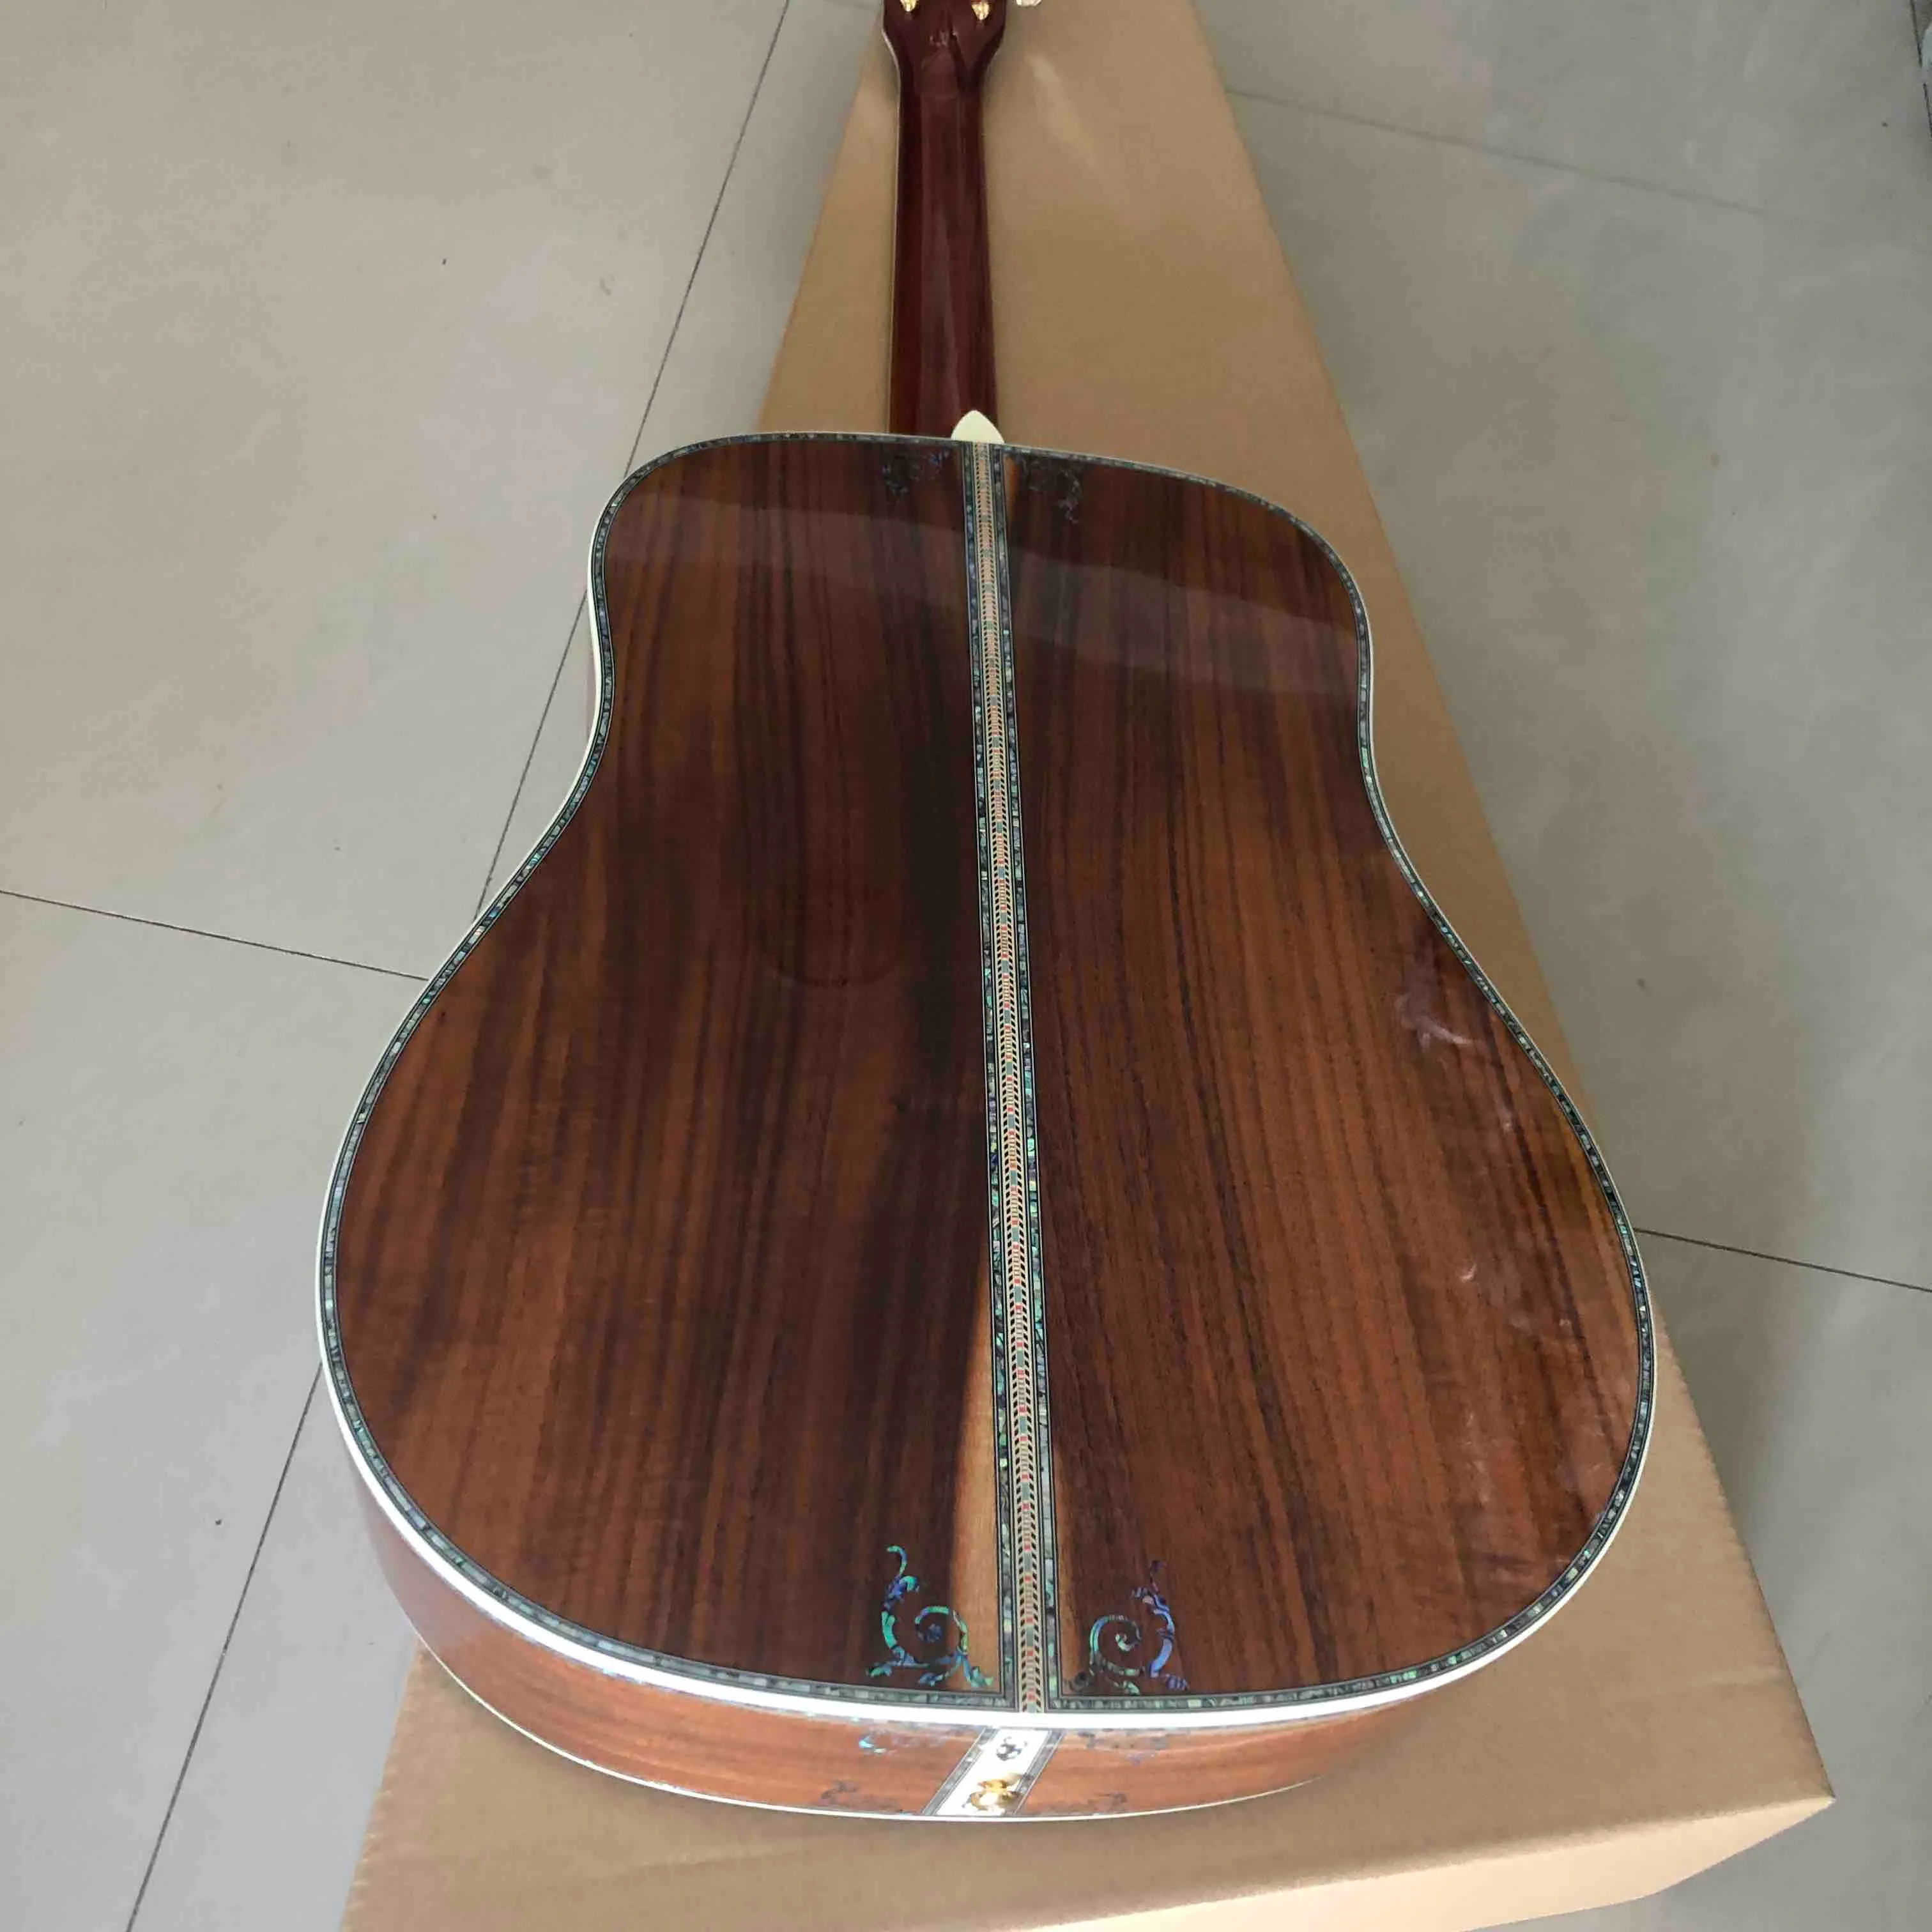 注文の実際のアワビの木の生活のインレイソリッドコアウッドトップアコースティックギター41インチエボニーの指板